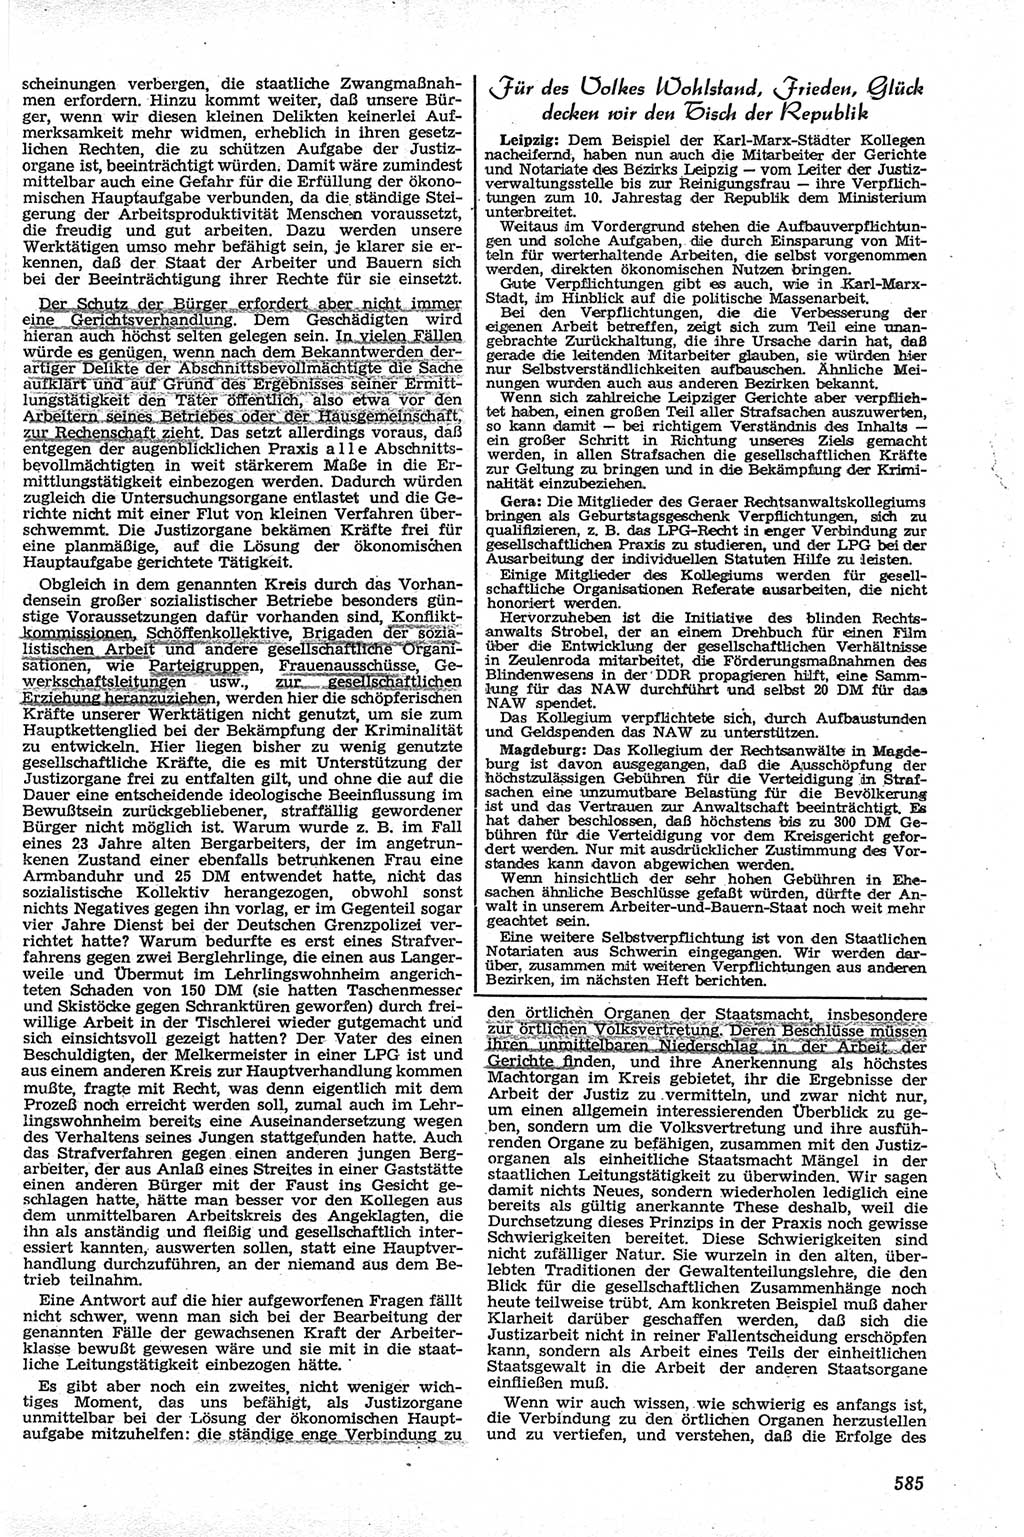 Neue Justiz (NJ), Zeitschrift für Recht und Rechtswissenschaft [Deutsche Demokratische Republik (DDR)], 13. Jahrgang 1959, Seite 585 (NJ DDR 1959, S. 585)